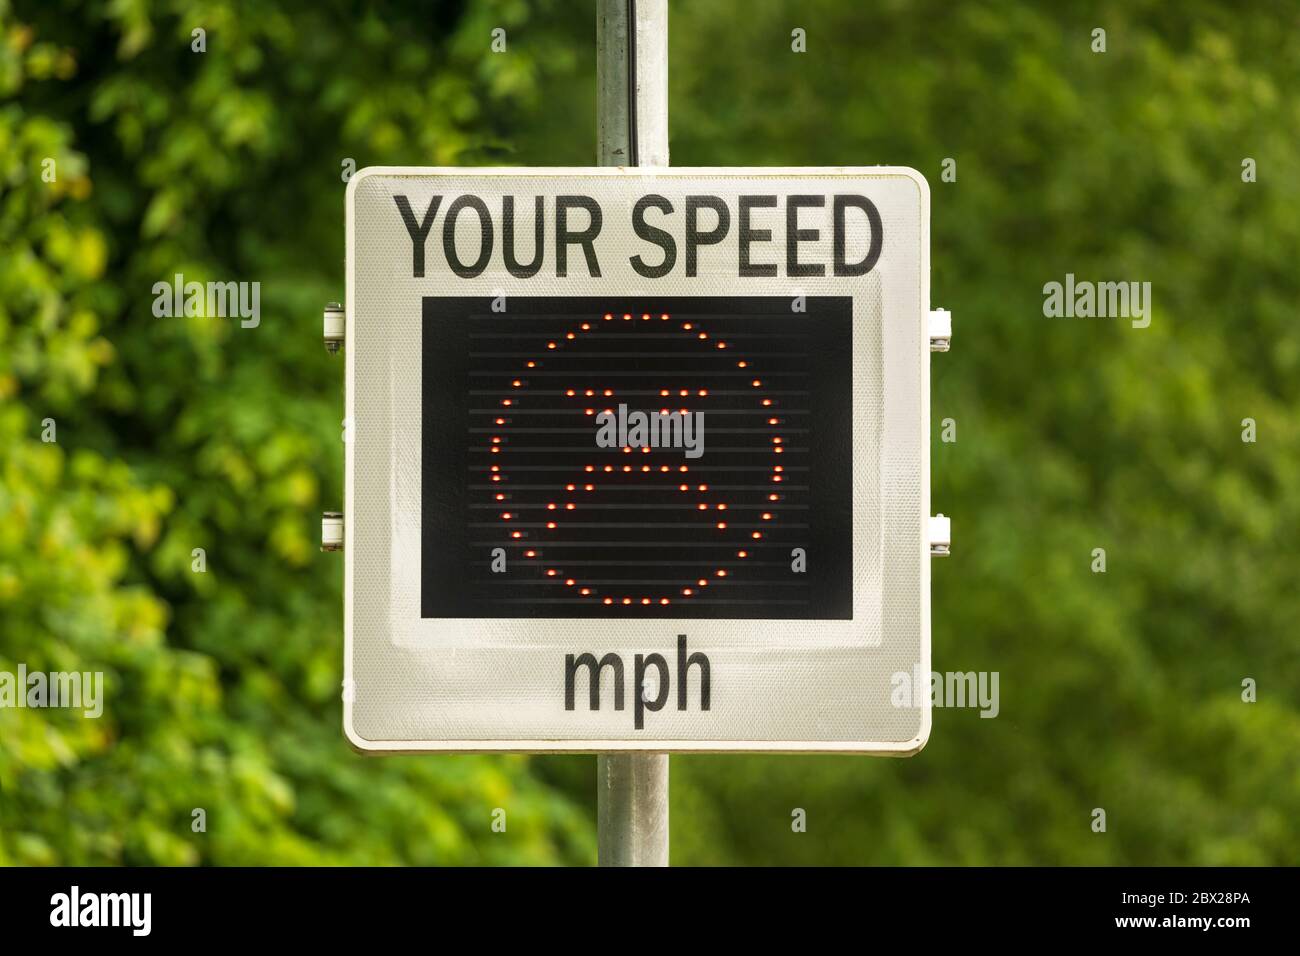 Indicateur de vitesse (SID) qui mesure et affiche la vitesse des voitures en approche. ROYAUME-UNI. Autres variantes d'écran disponibles dans mon portefeuille. Banque D'Images